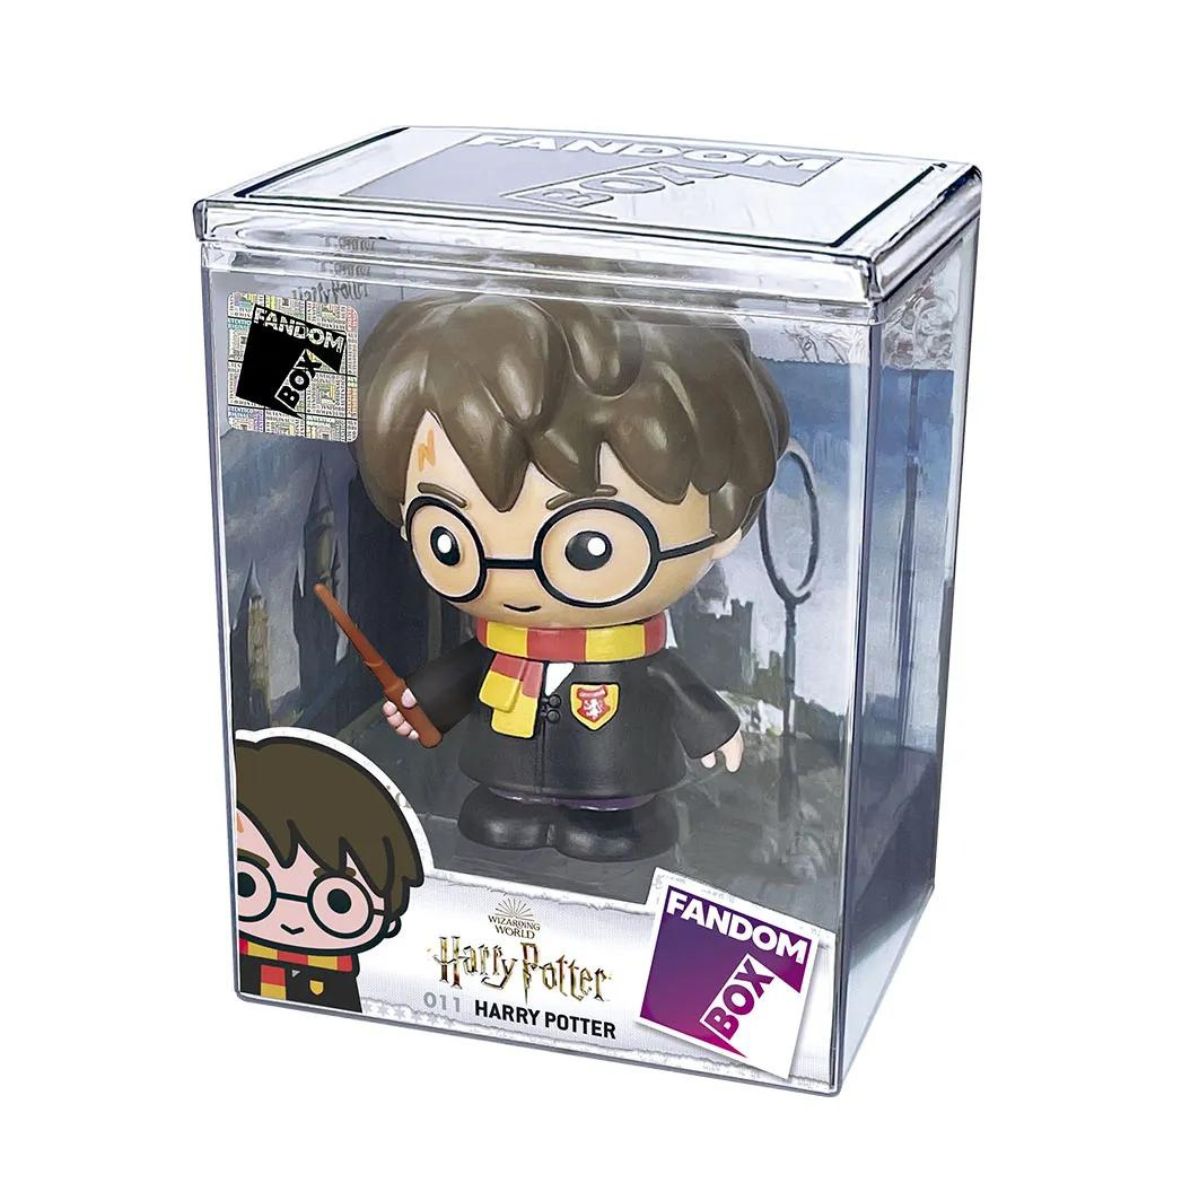 PRÉ-VENDA Boneco Harry Potter Hermione Granger - Mattel